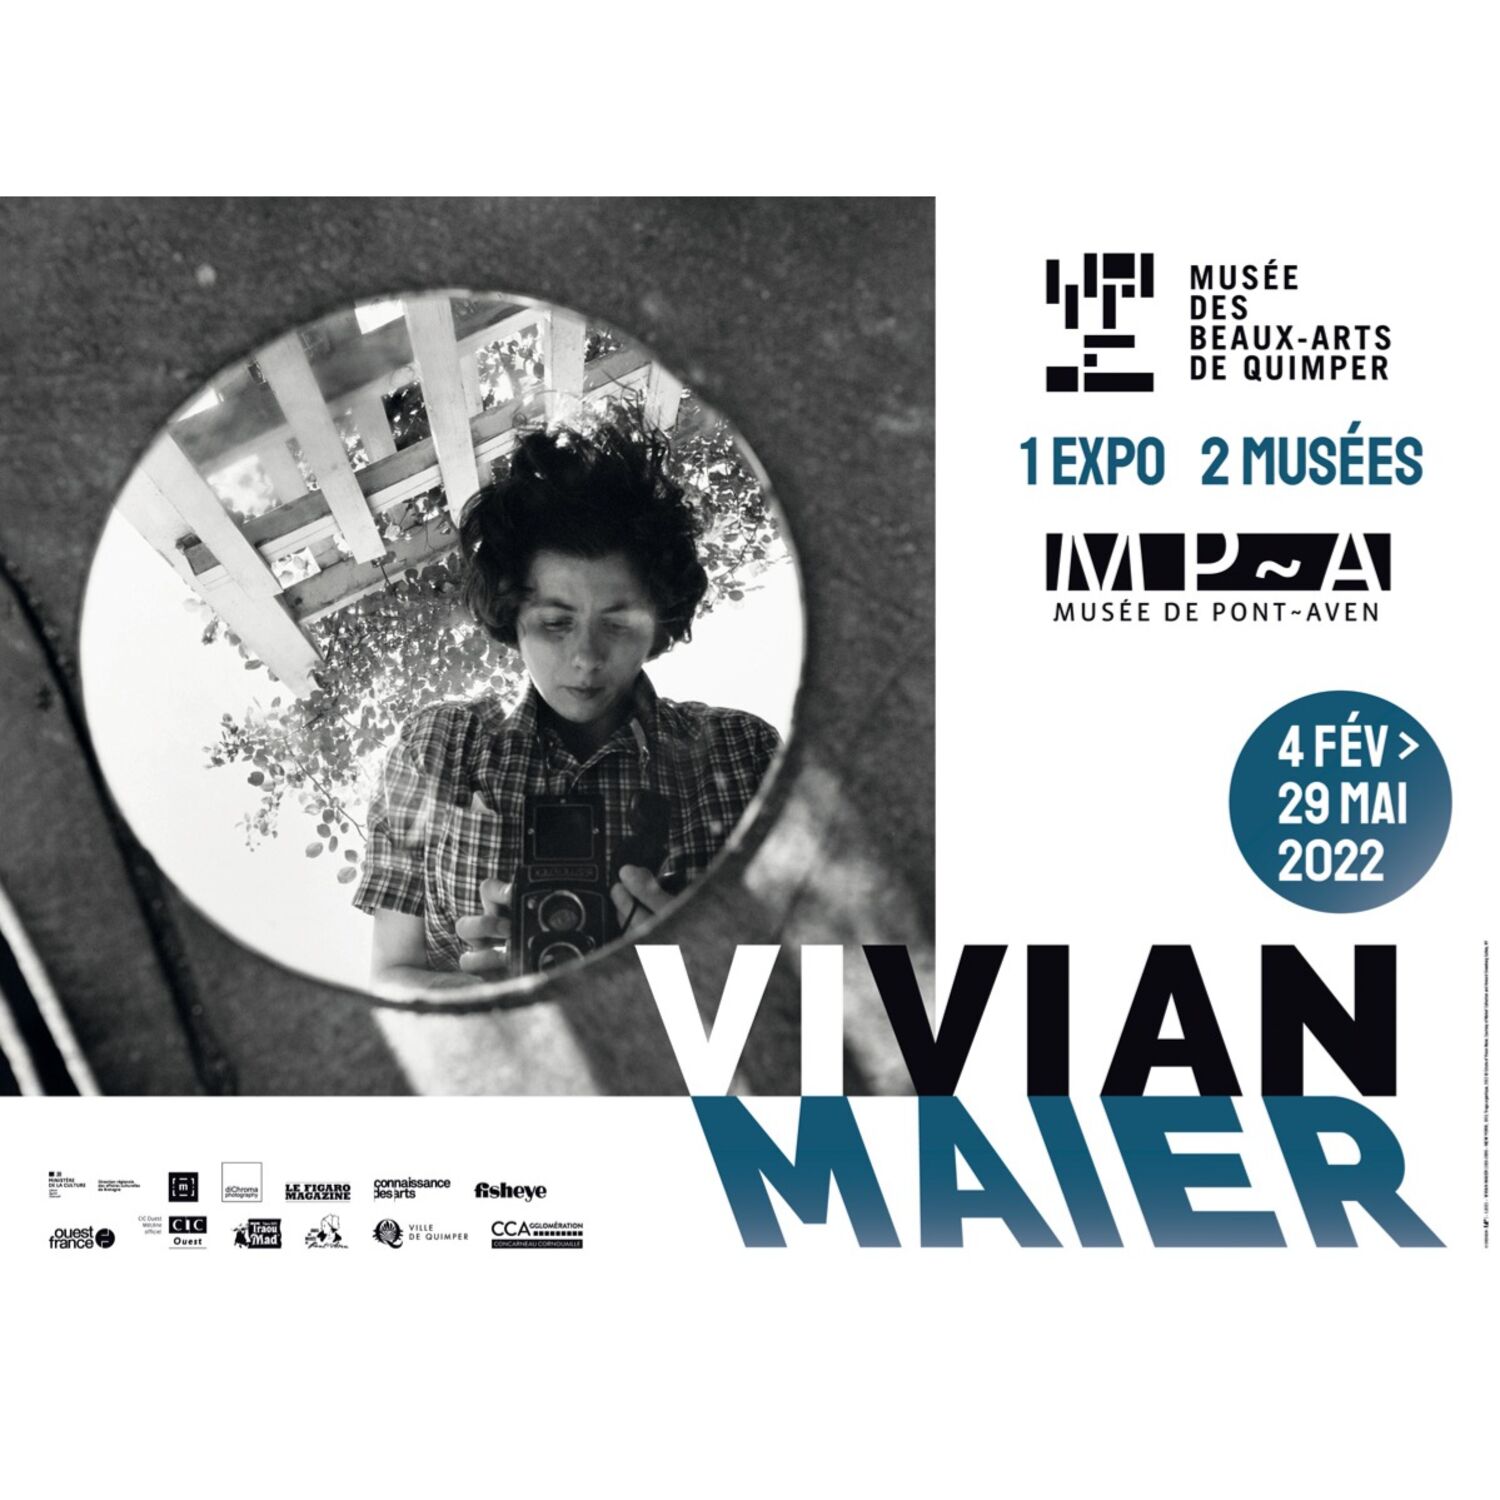 Vivian Maier, New-York-Chicago : au Musée des Beaux-Arts de Quimper